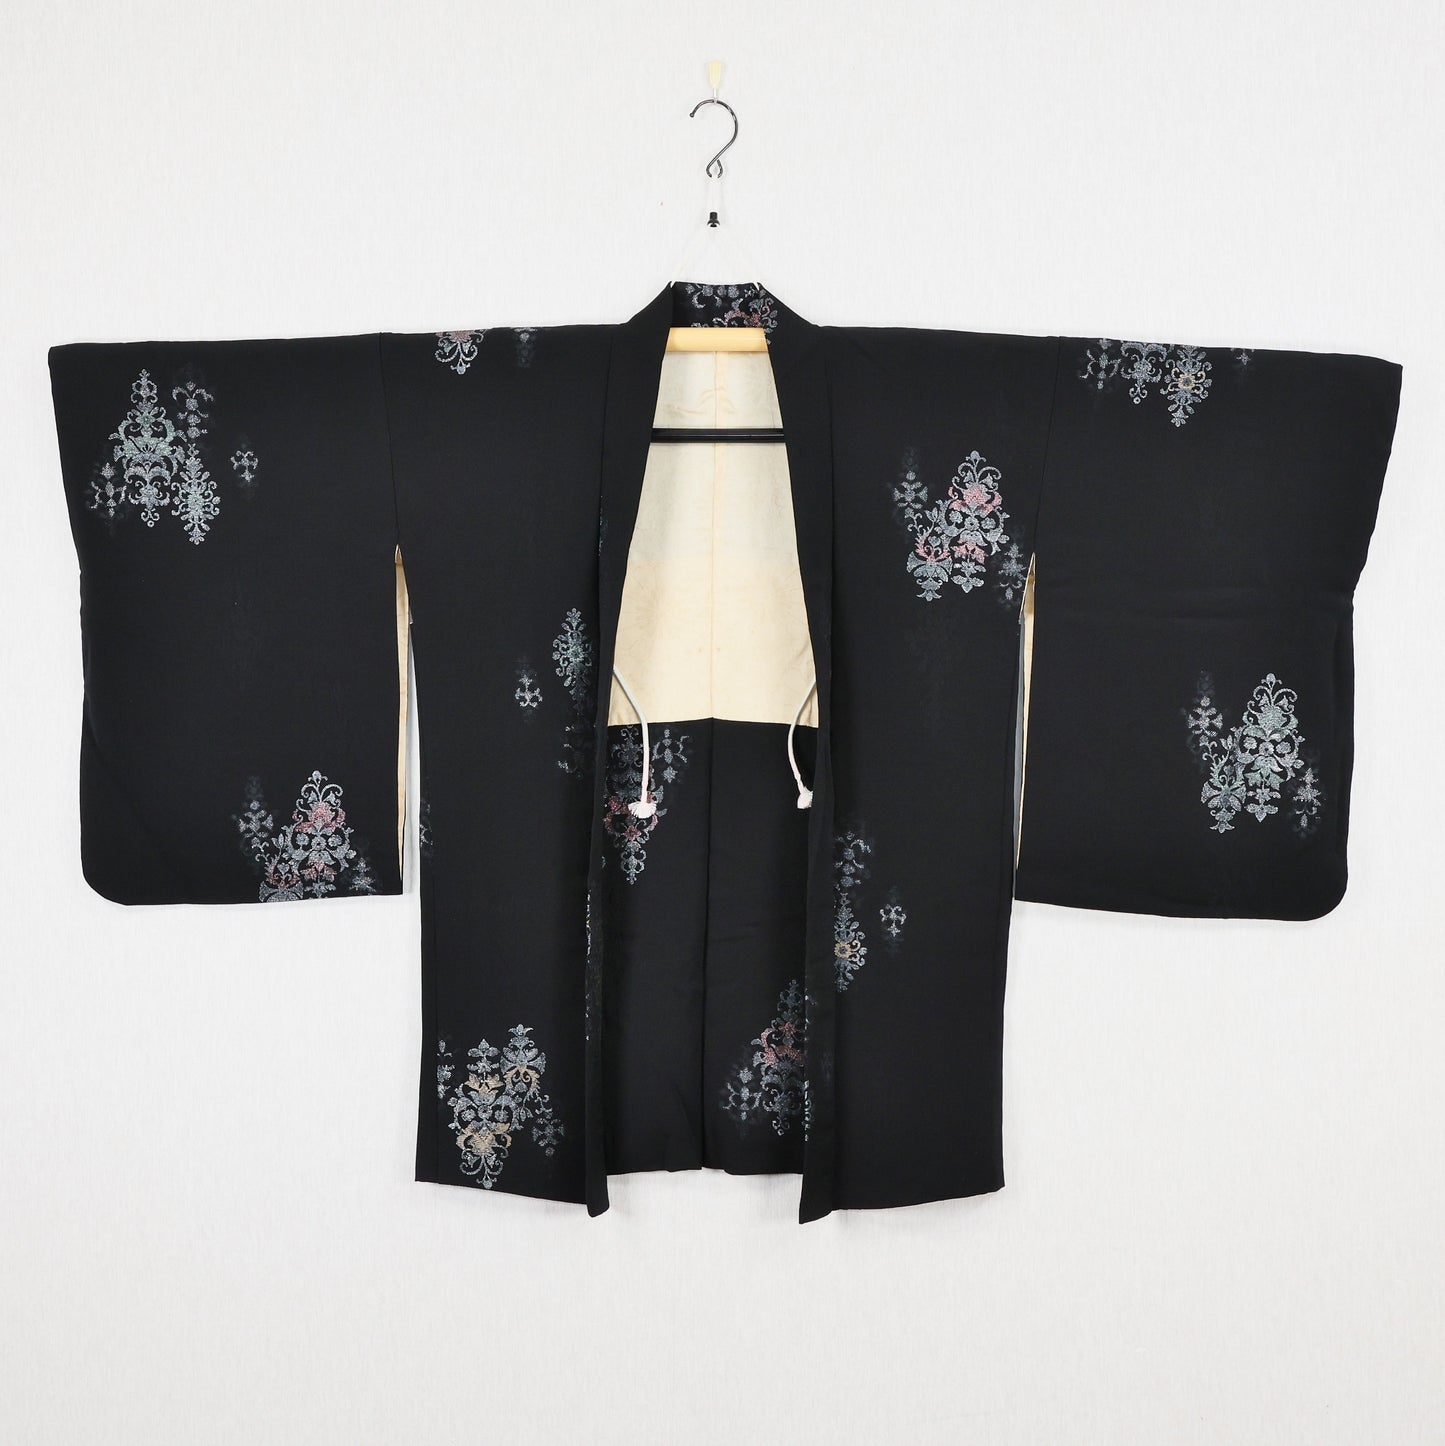 Haori kimono, Black Haori, Japanese Haori Kimono, Black Kimono Haori, Japanese Haori, Vintage Haori kimono, Japanese haori kimono, Haori for women, Free shipping